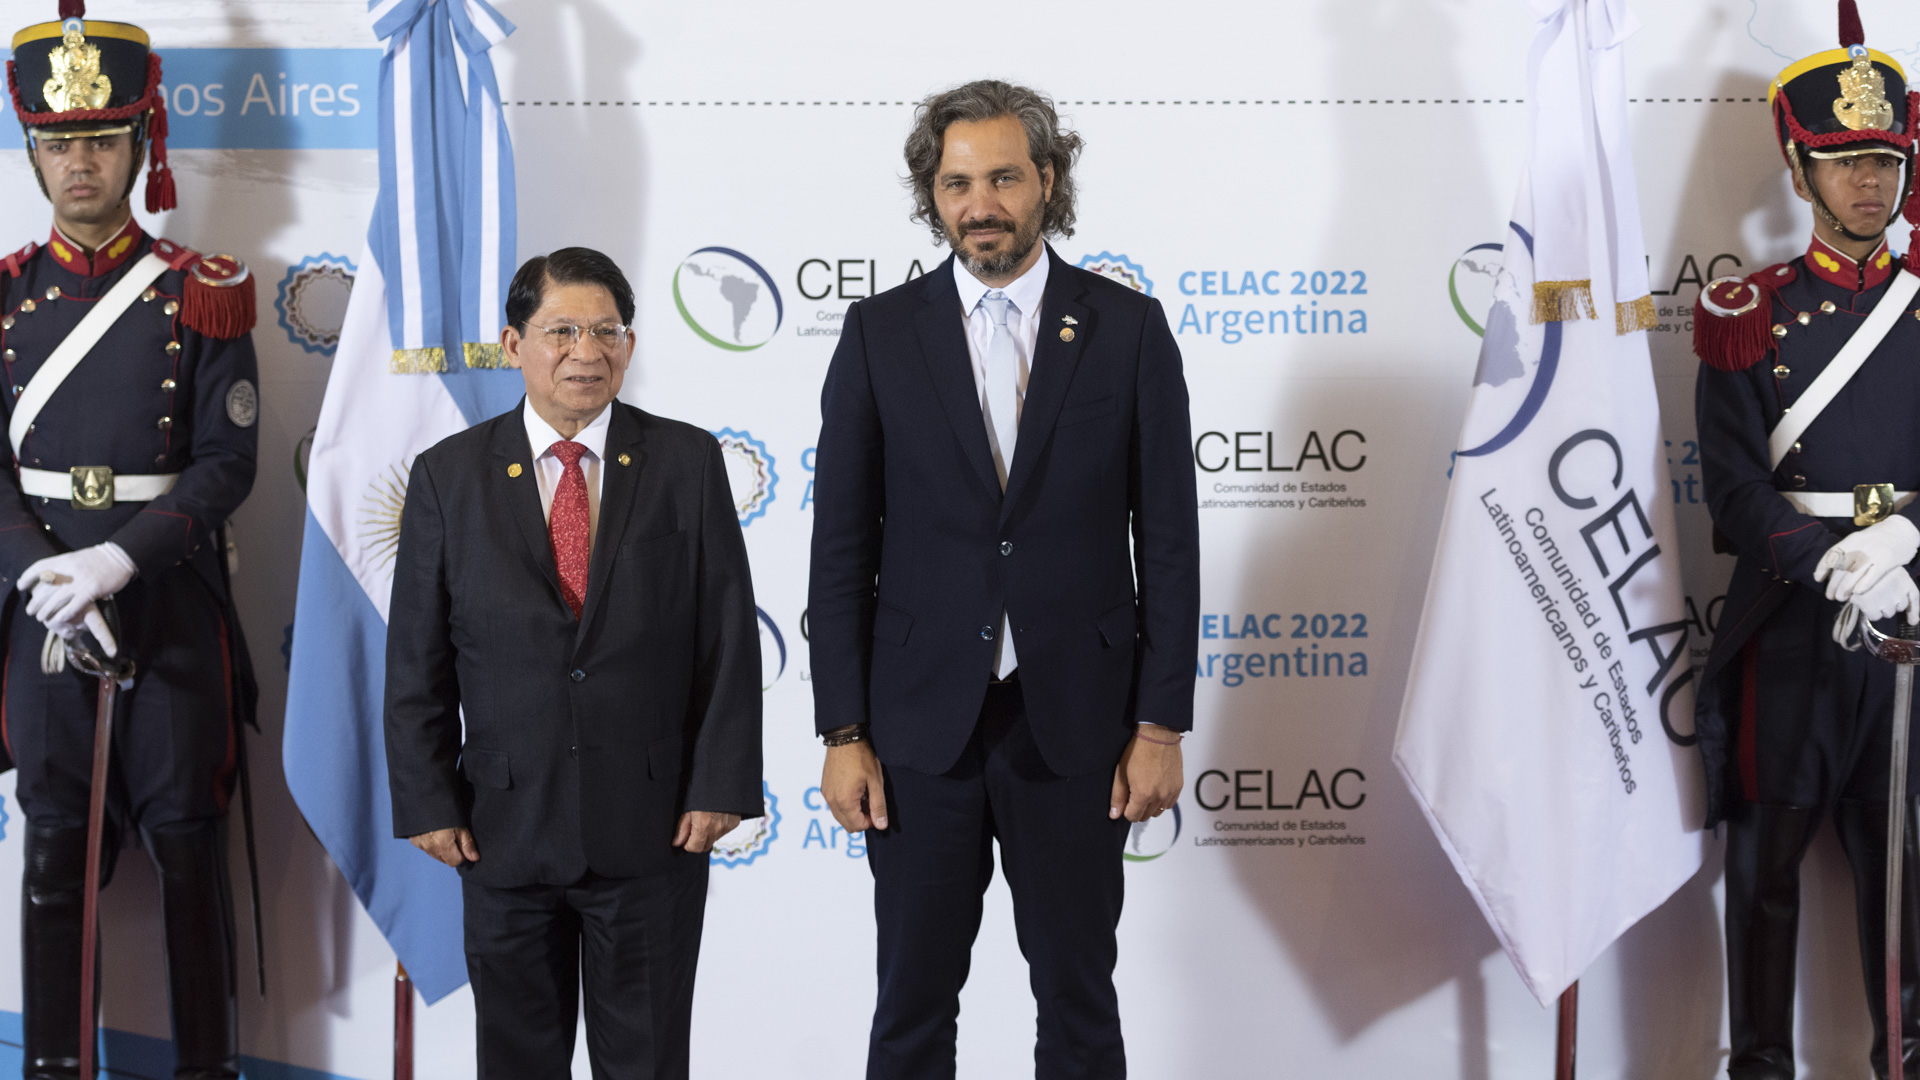 El canciller nicaragüense Denis Moncada posa junto a Santiago Cafiero en la Cumbre de la CELAC que se realizó en Buenos Aires 